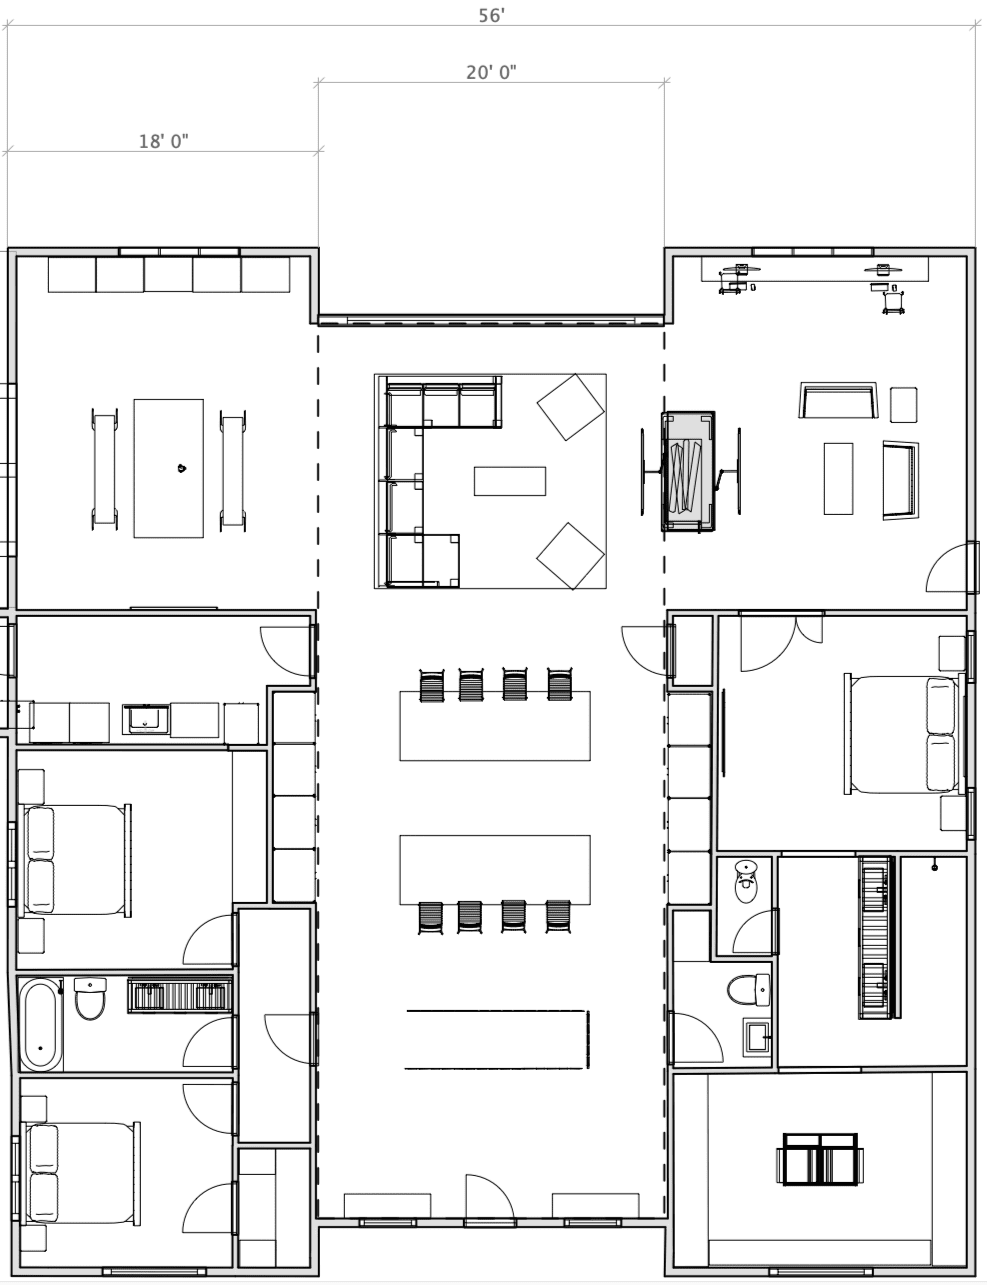 Revised floorplan